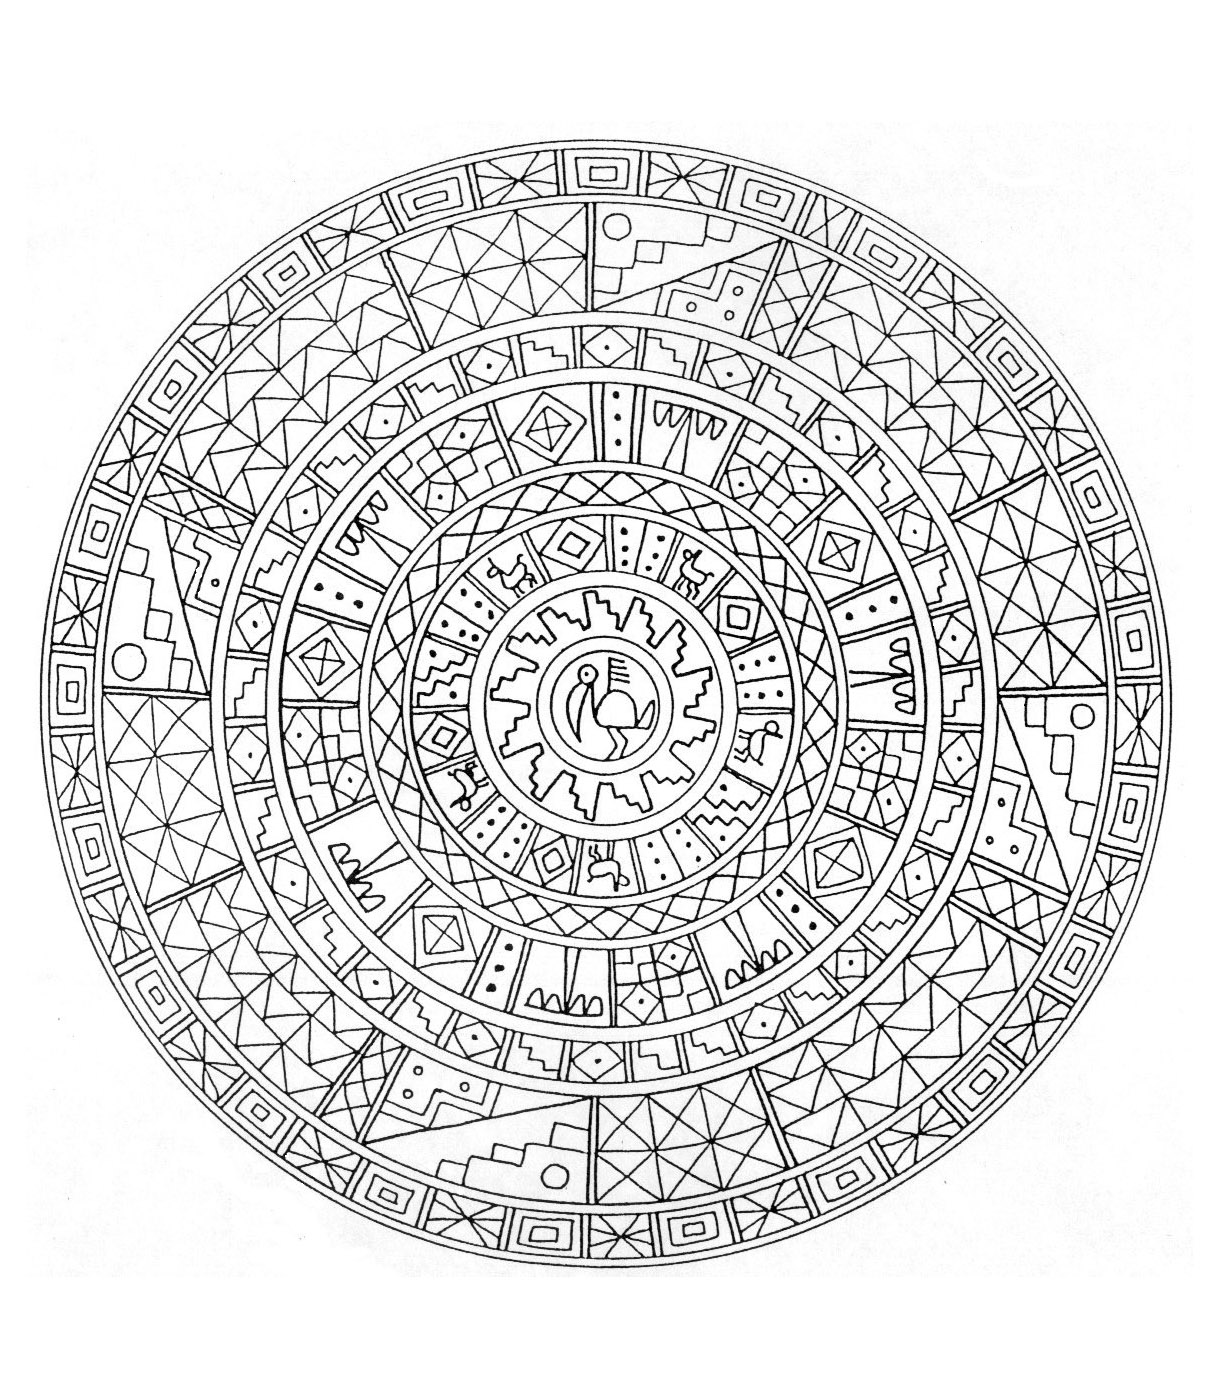 Extraordinaire mandala avec plusieurs formes géométriques représentés par des carrés, losanges ainsi qu'une très jolie fleur au centre de celui-ci. Mandala avec beaucoup de détails.